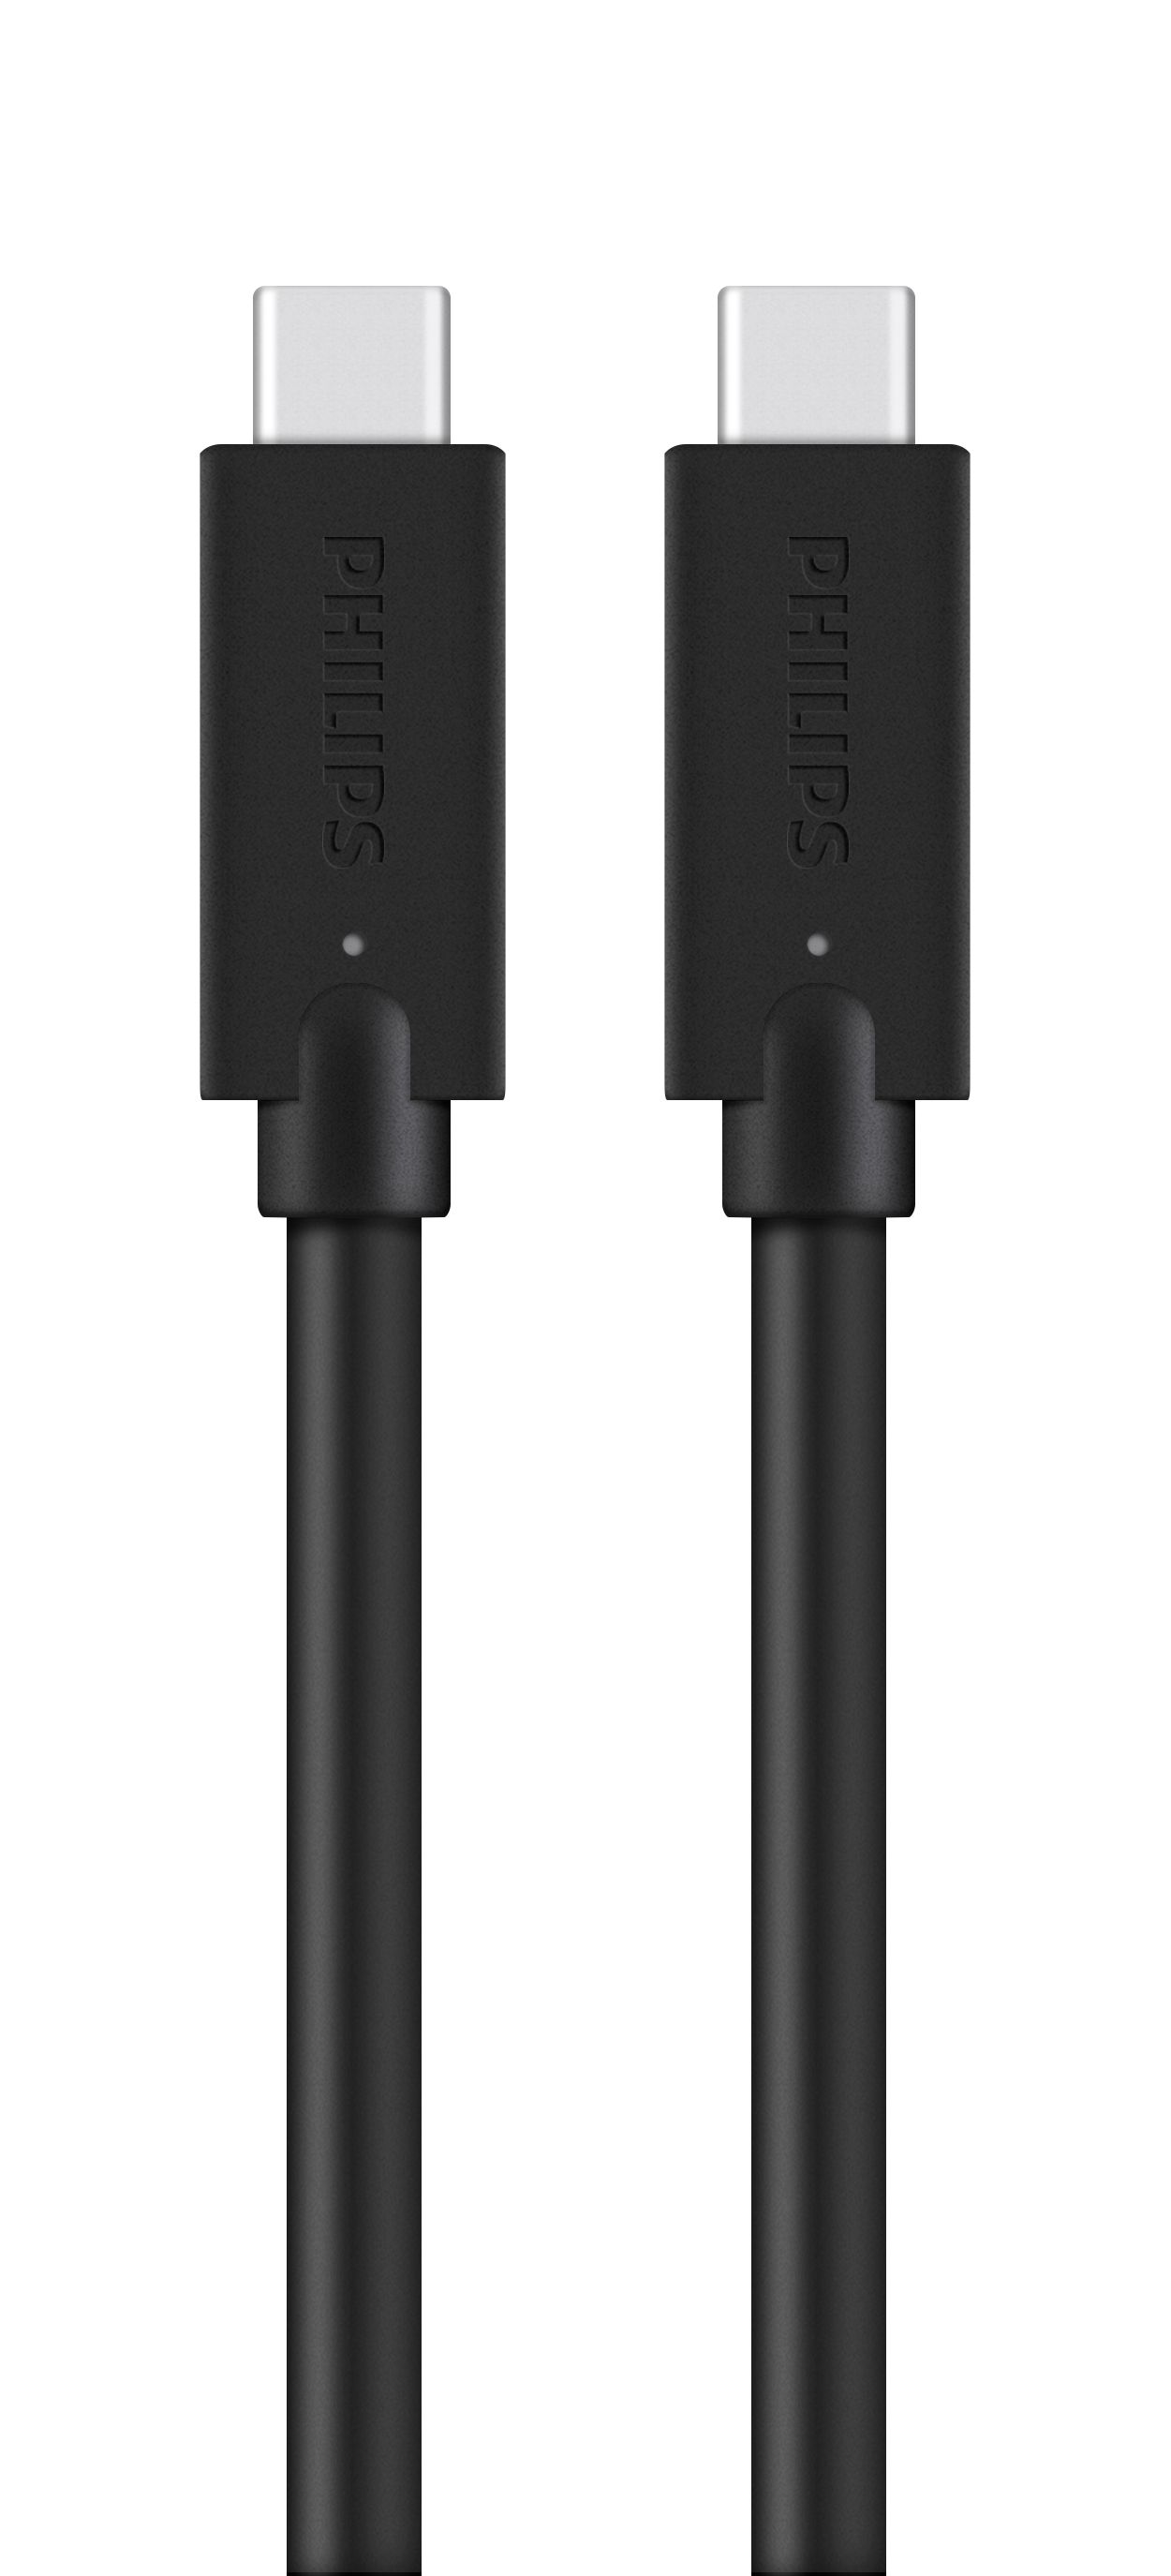 كبل مضفور للتحويل من USB-C إلى USB-C